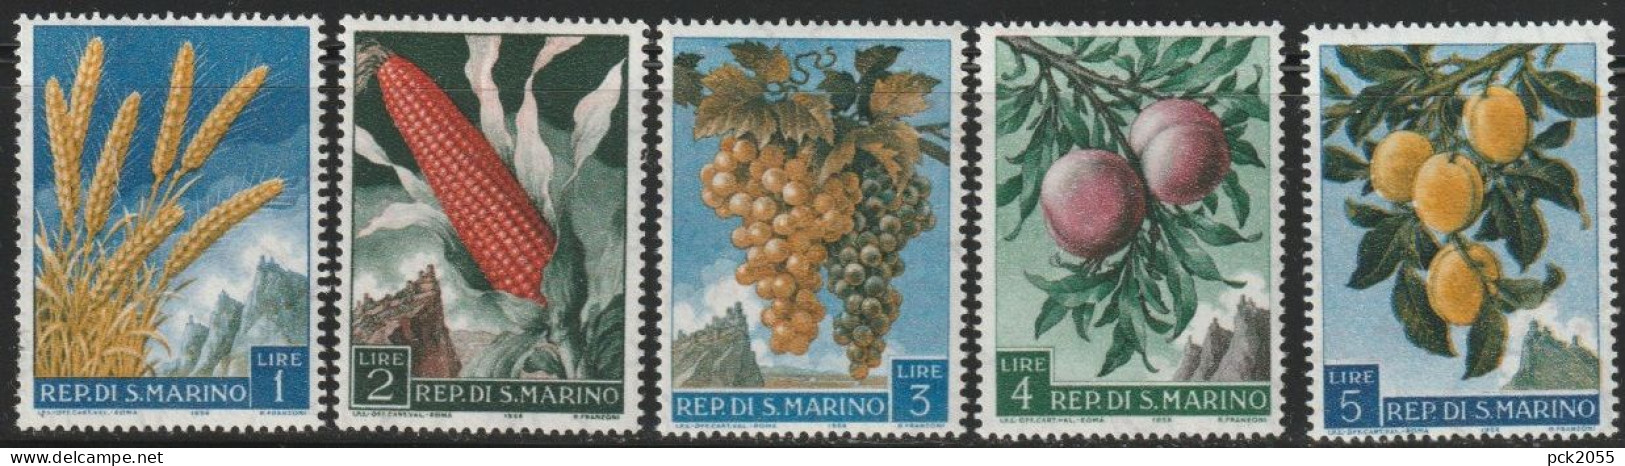 San Marino 1958 Mi Nr. 594 - 598 ** Postfrisch Früchte ( 632) Günstige Versandkosten - Unused Stamps